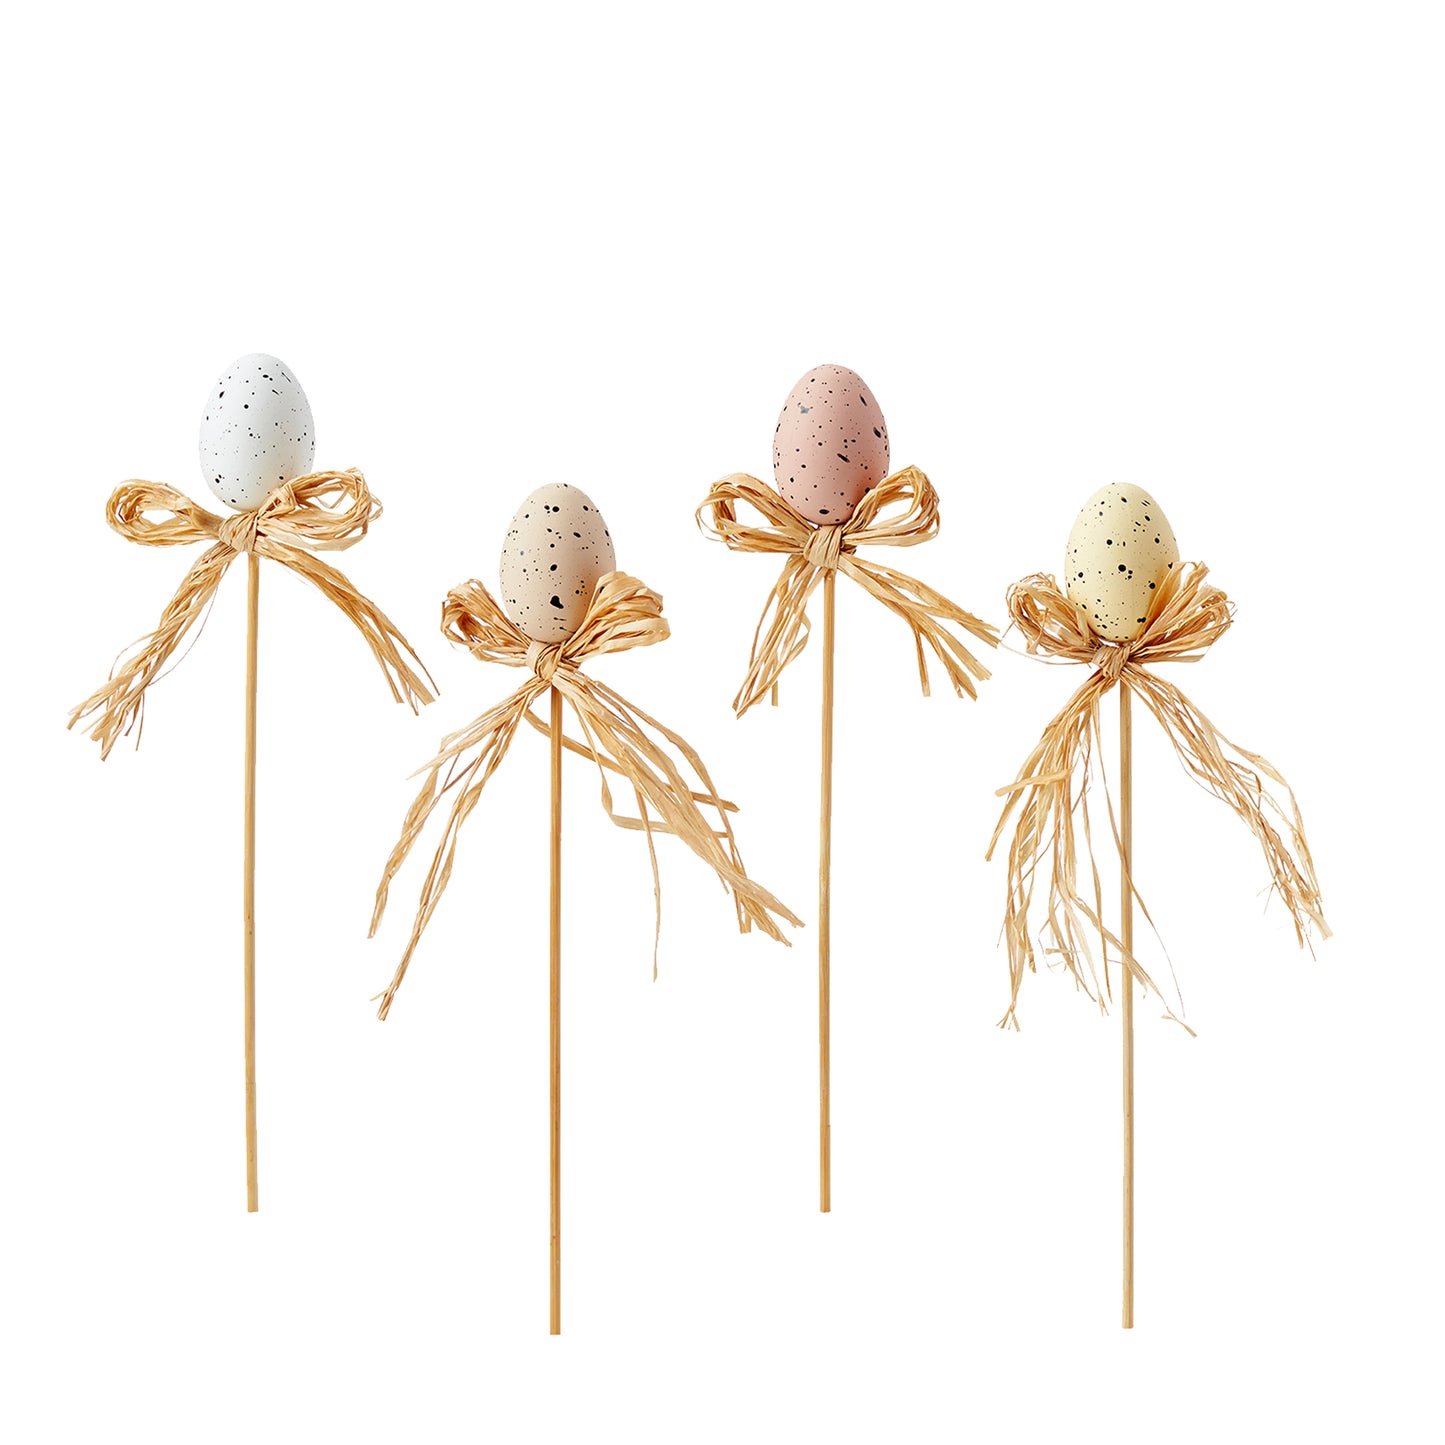 Set of 4 Easter Eggs on Sticks